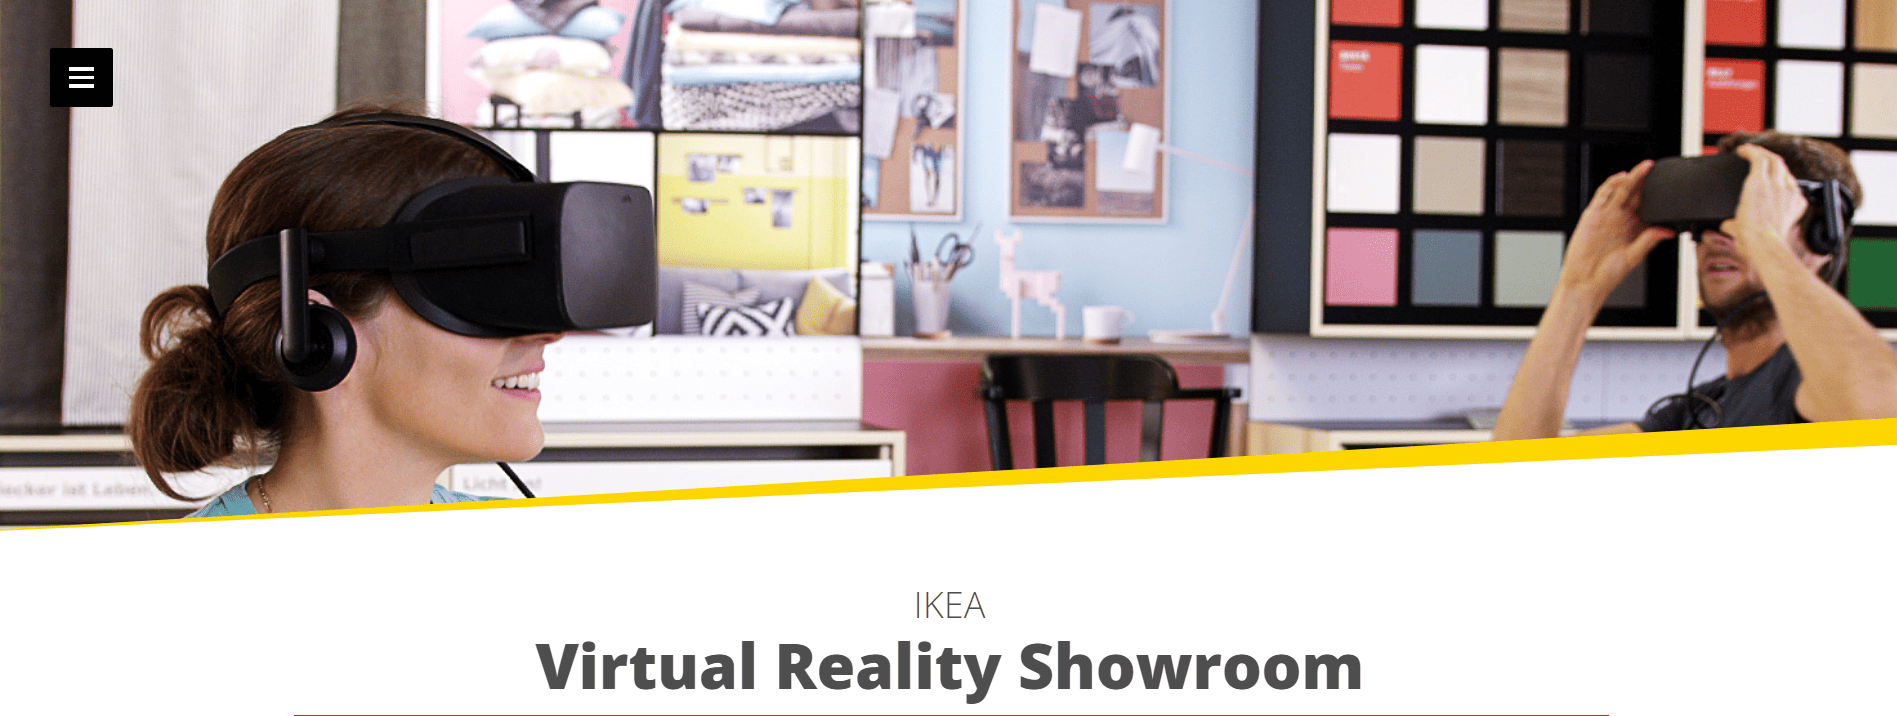 IKEA VR showroom screenshot